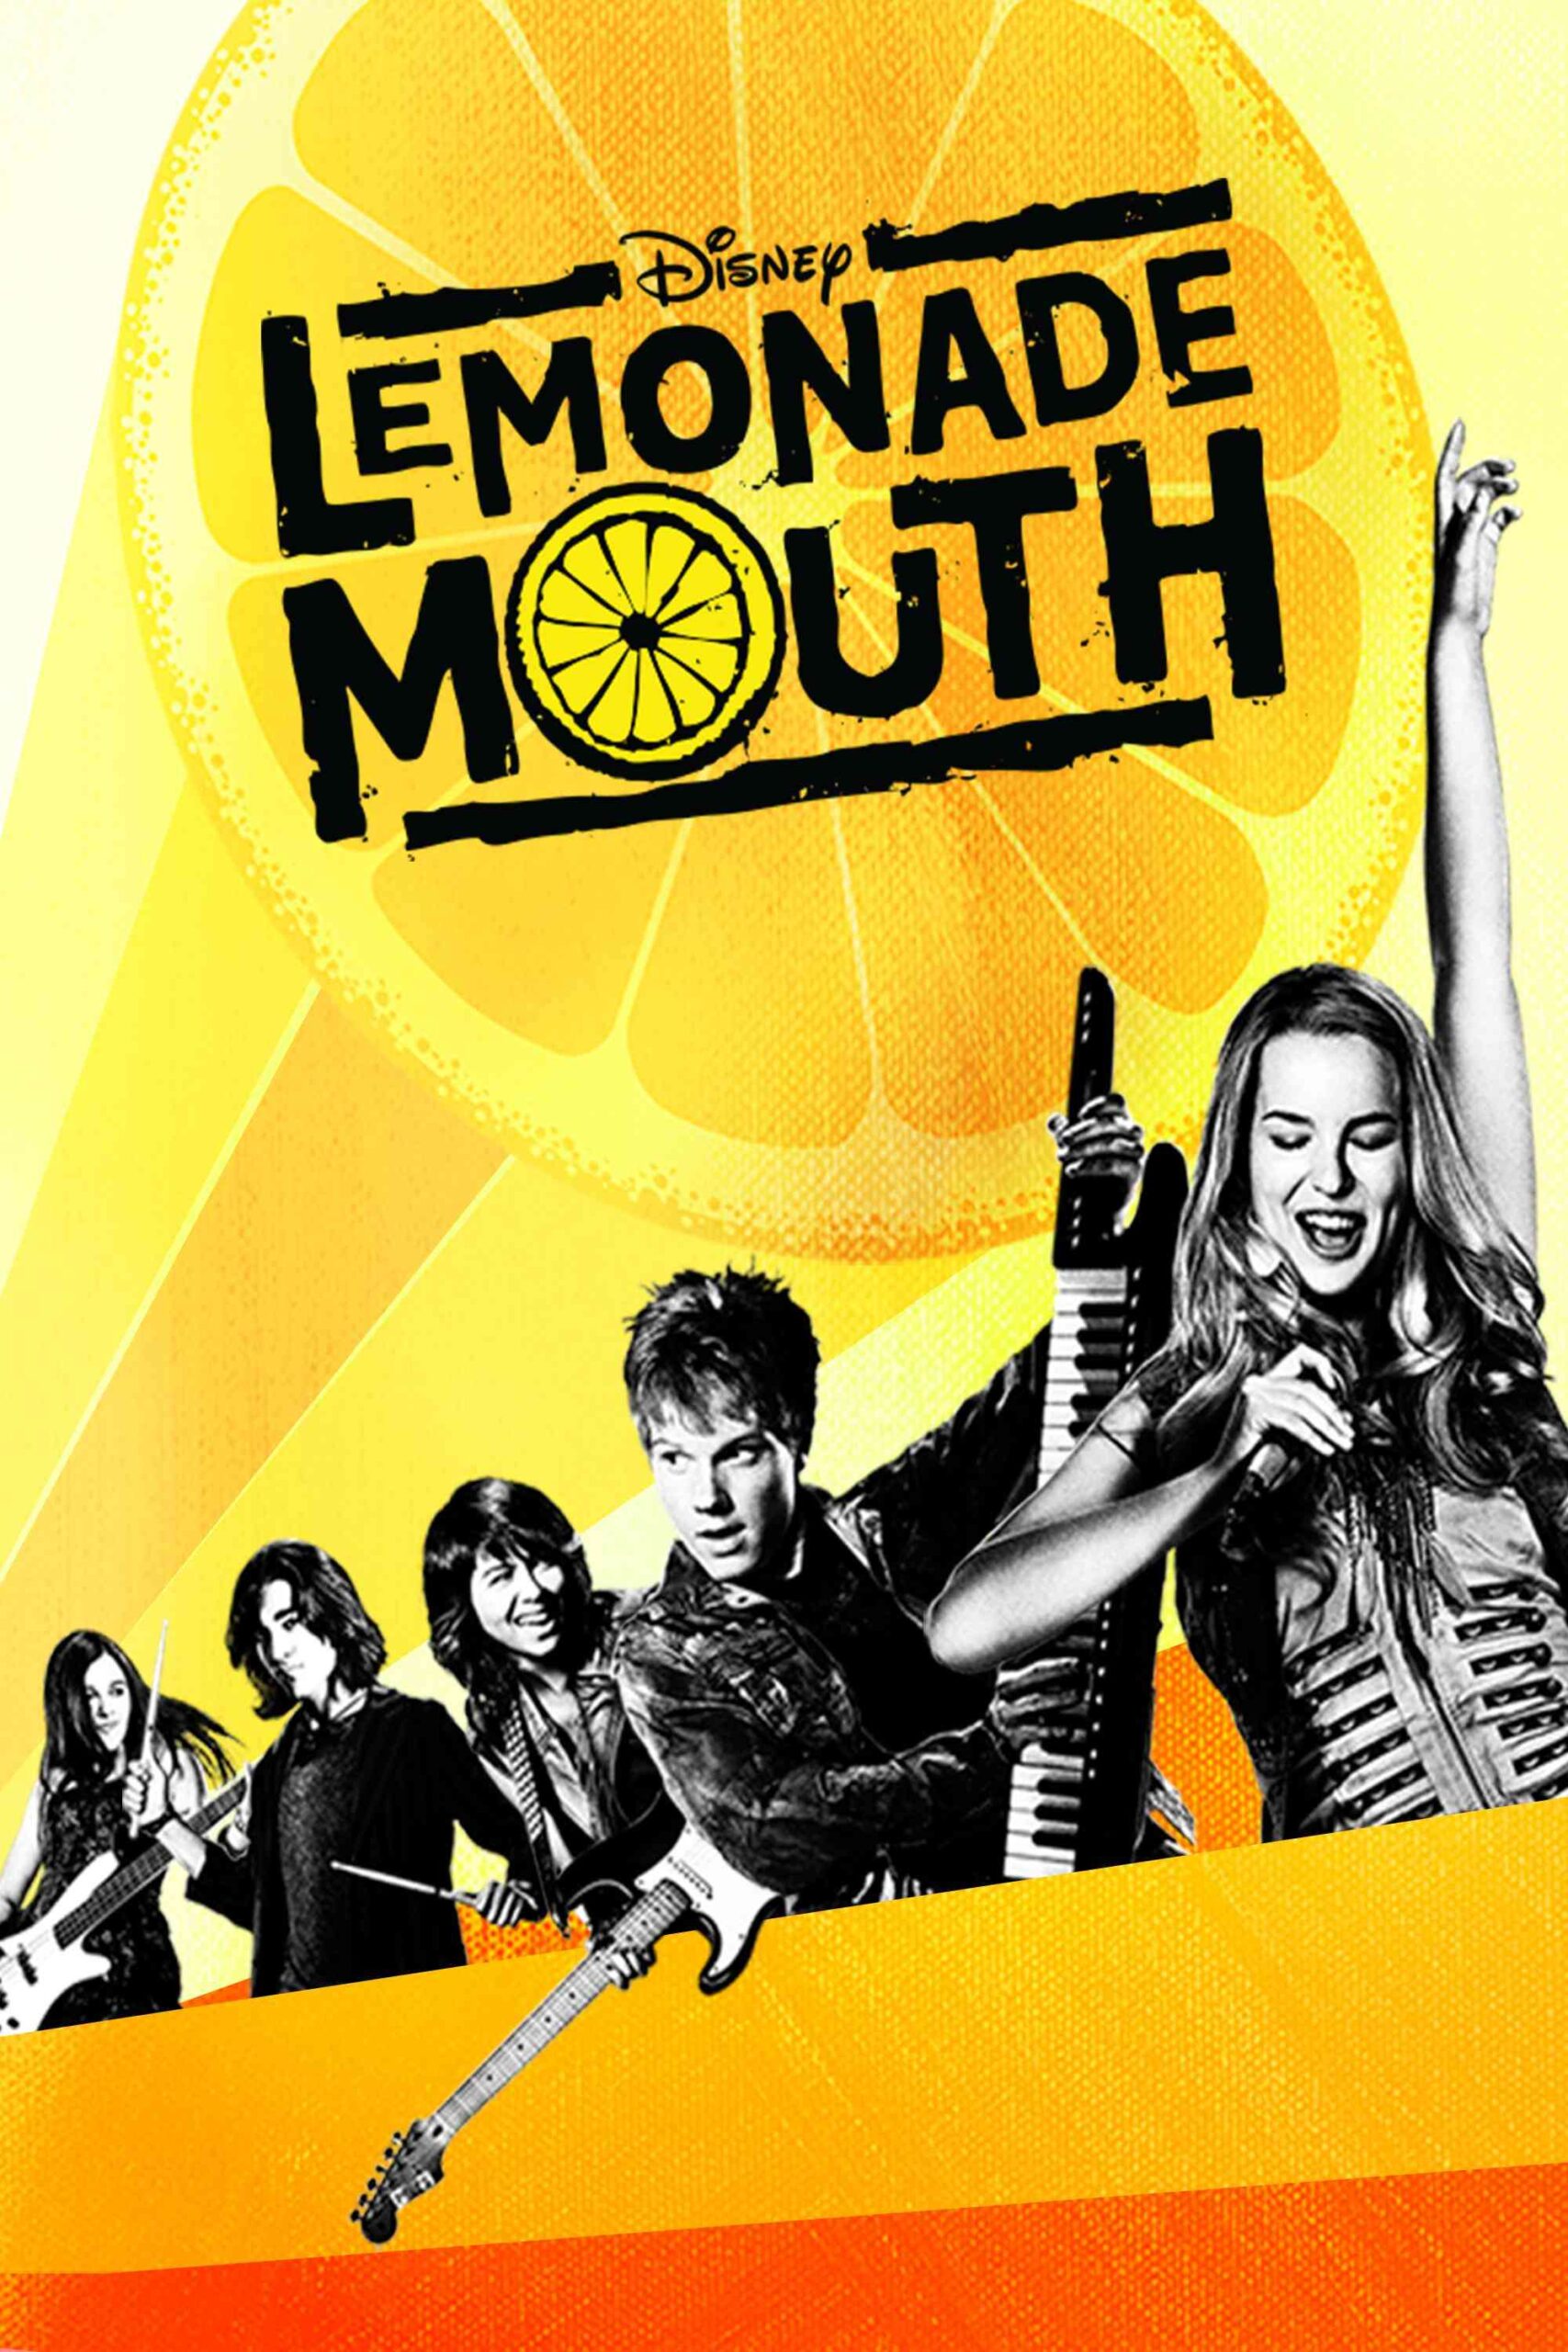 FULL MOVIE: Lemonade Mouth (2011)